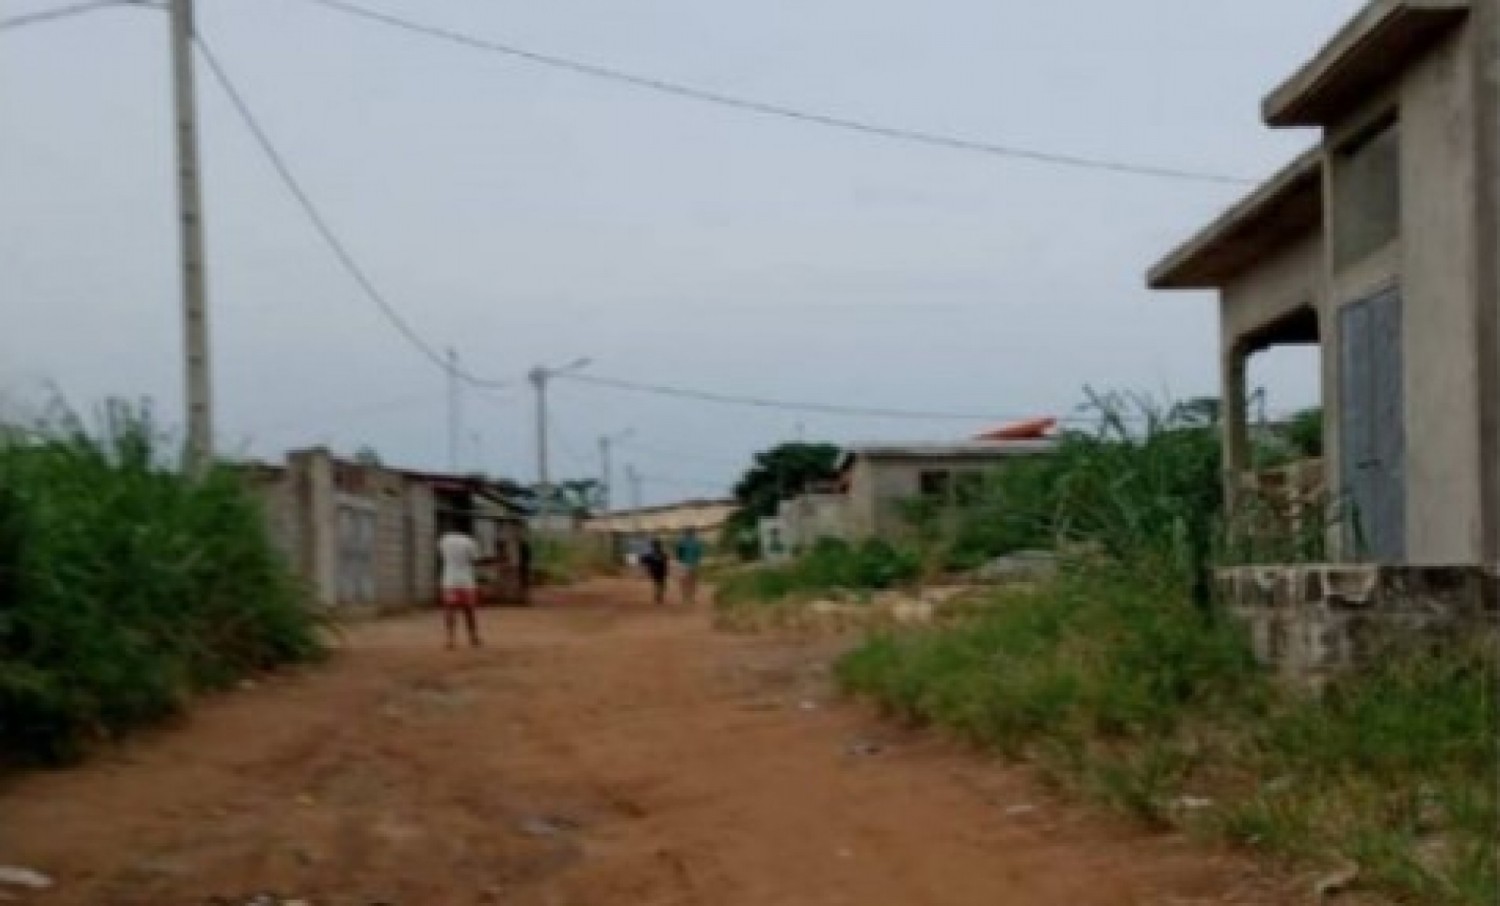 Côte d'Ivoire : Agressions répétées à Songon Kassemblé, le corps sans vie d'une fillette retrouvé  dans un immeuble inachevé